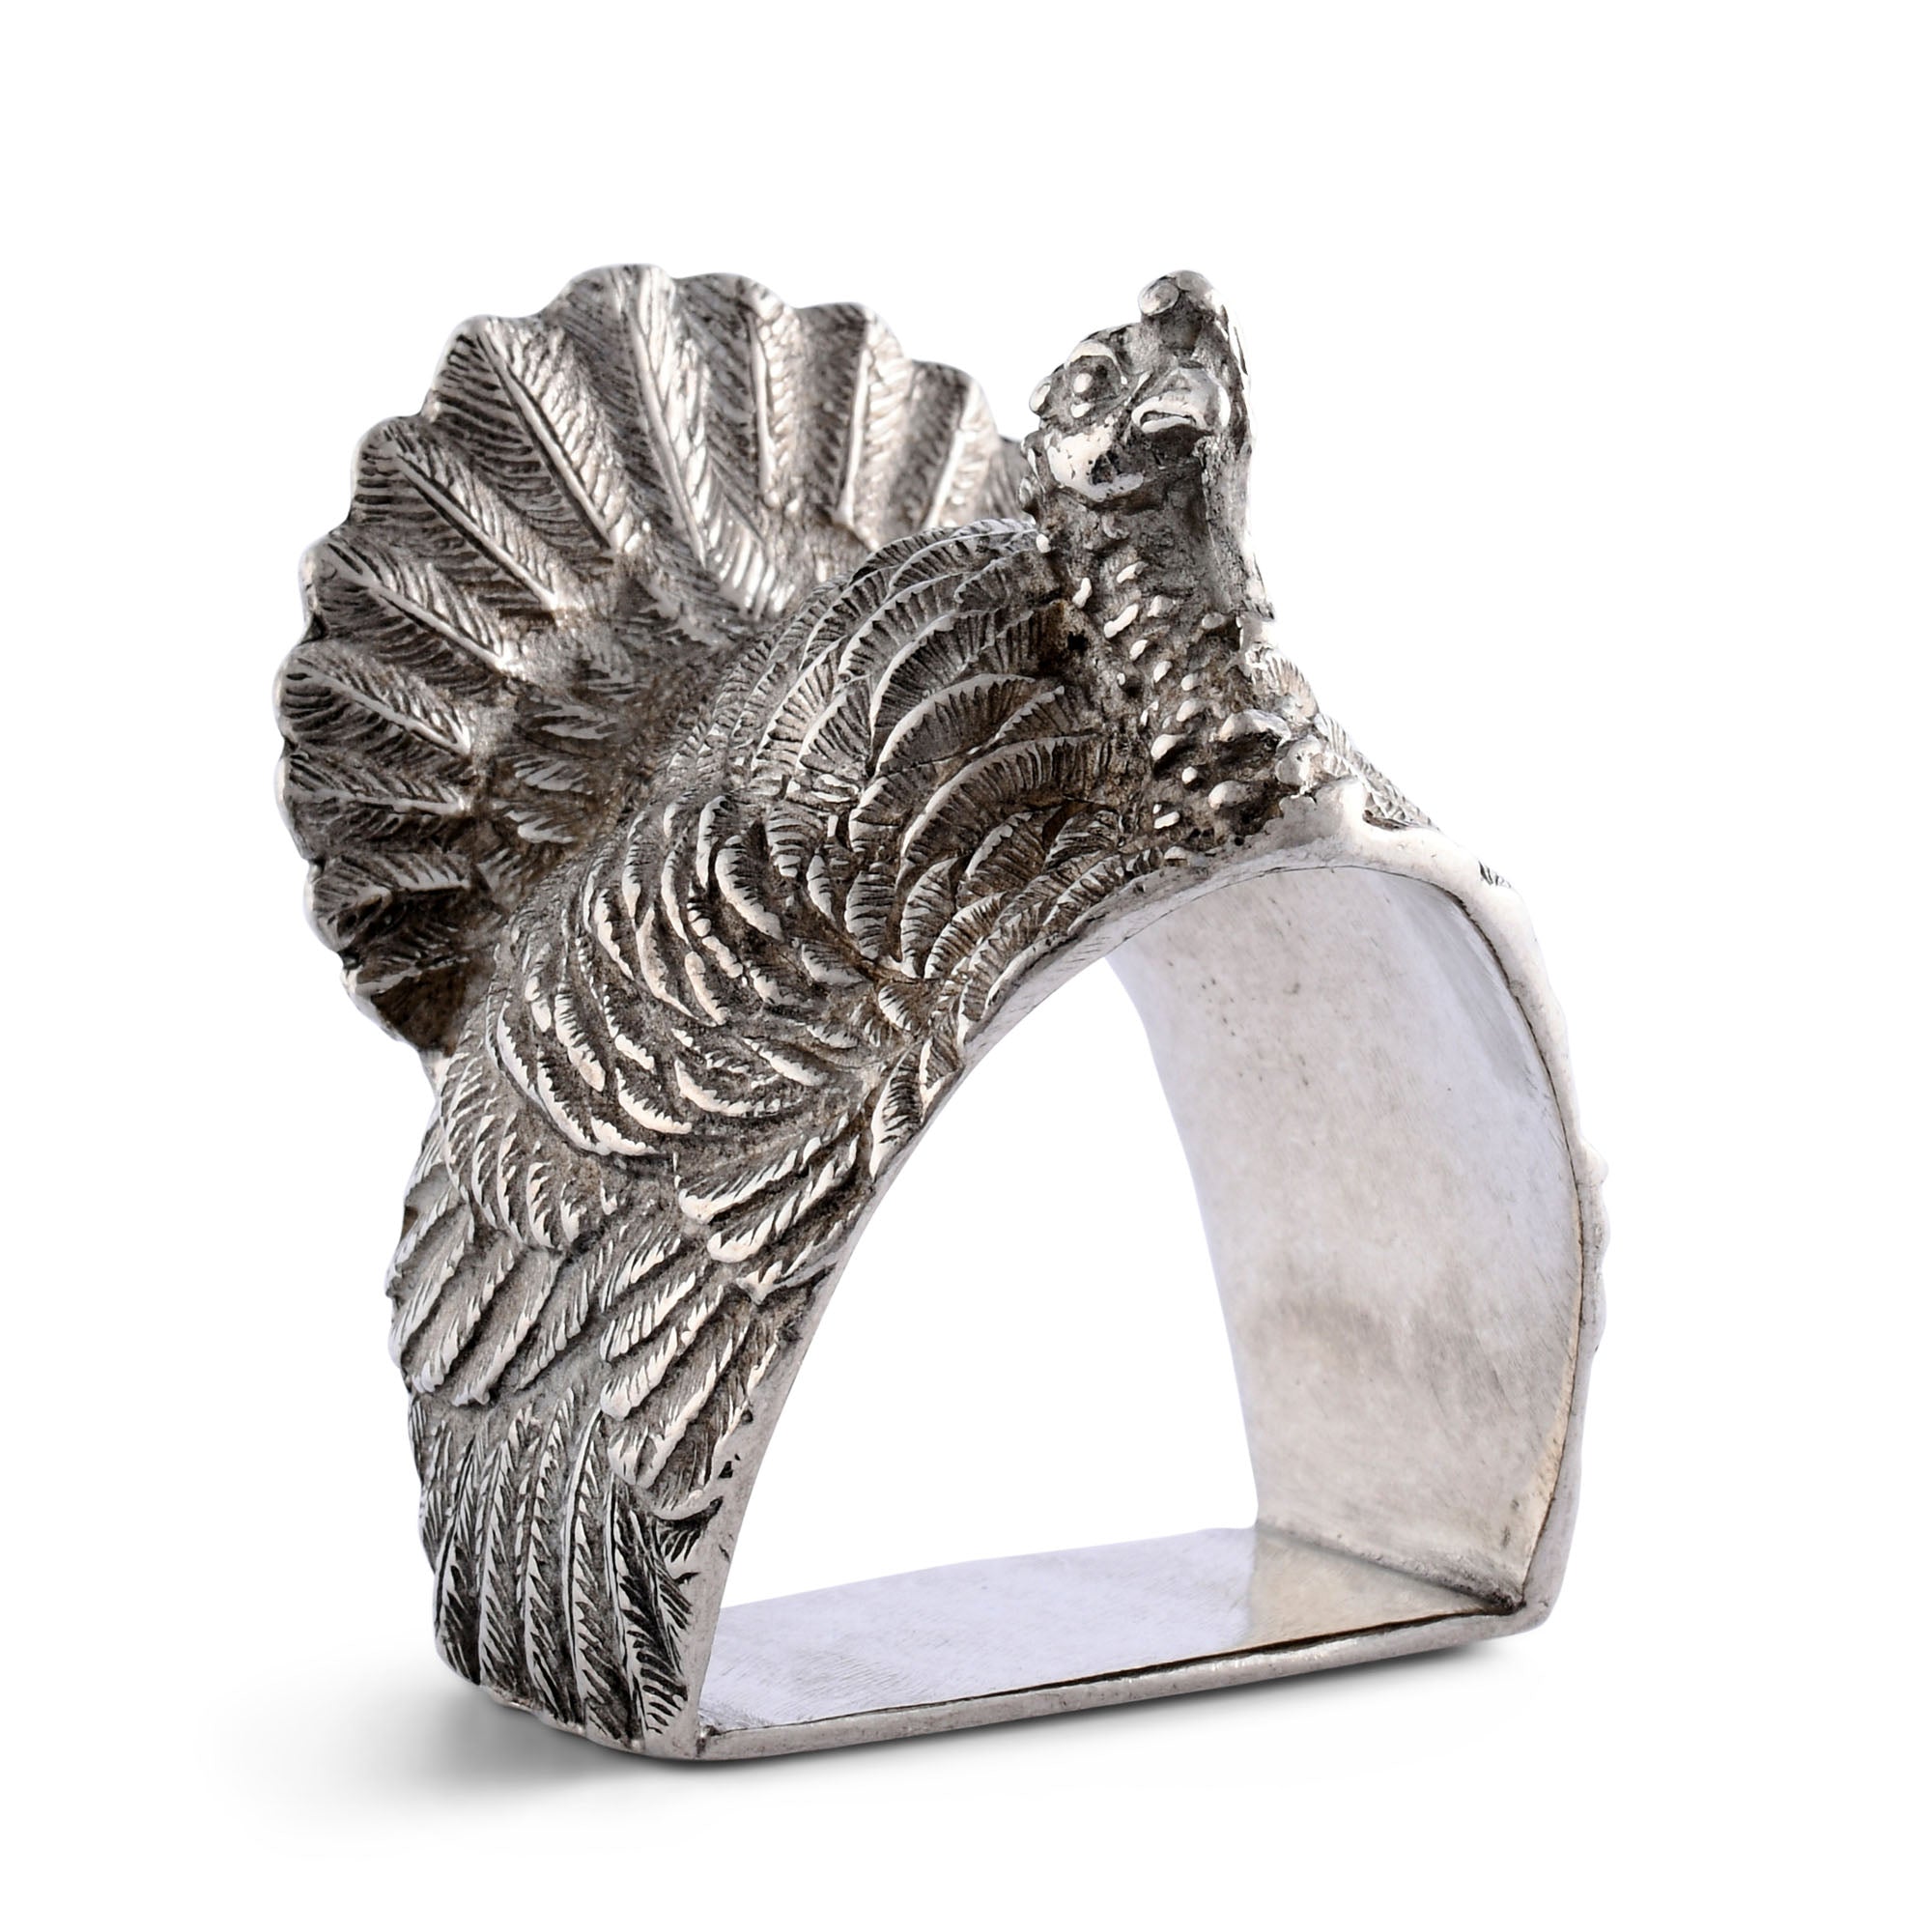 Vagabond House Turkey Napkin Ring Product Image